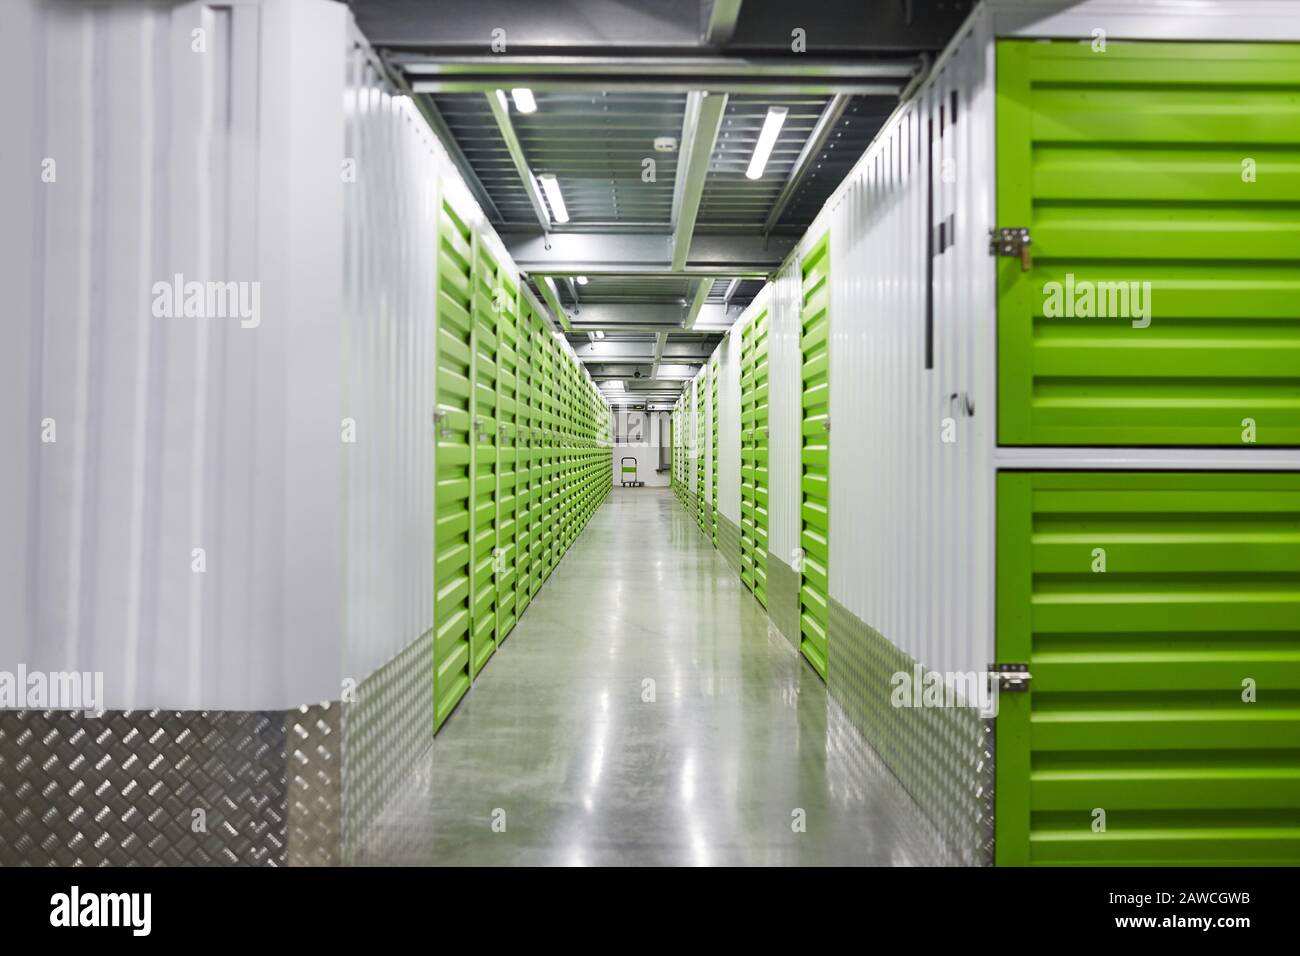 Image du couloir vide de la salle de stockage avec des boîtes vertes pour les colis Banque D'Images